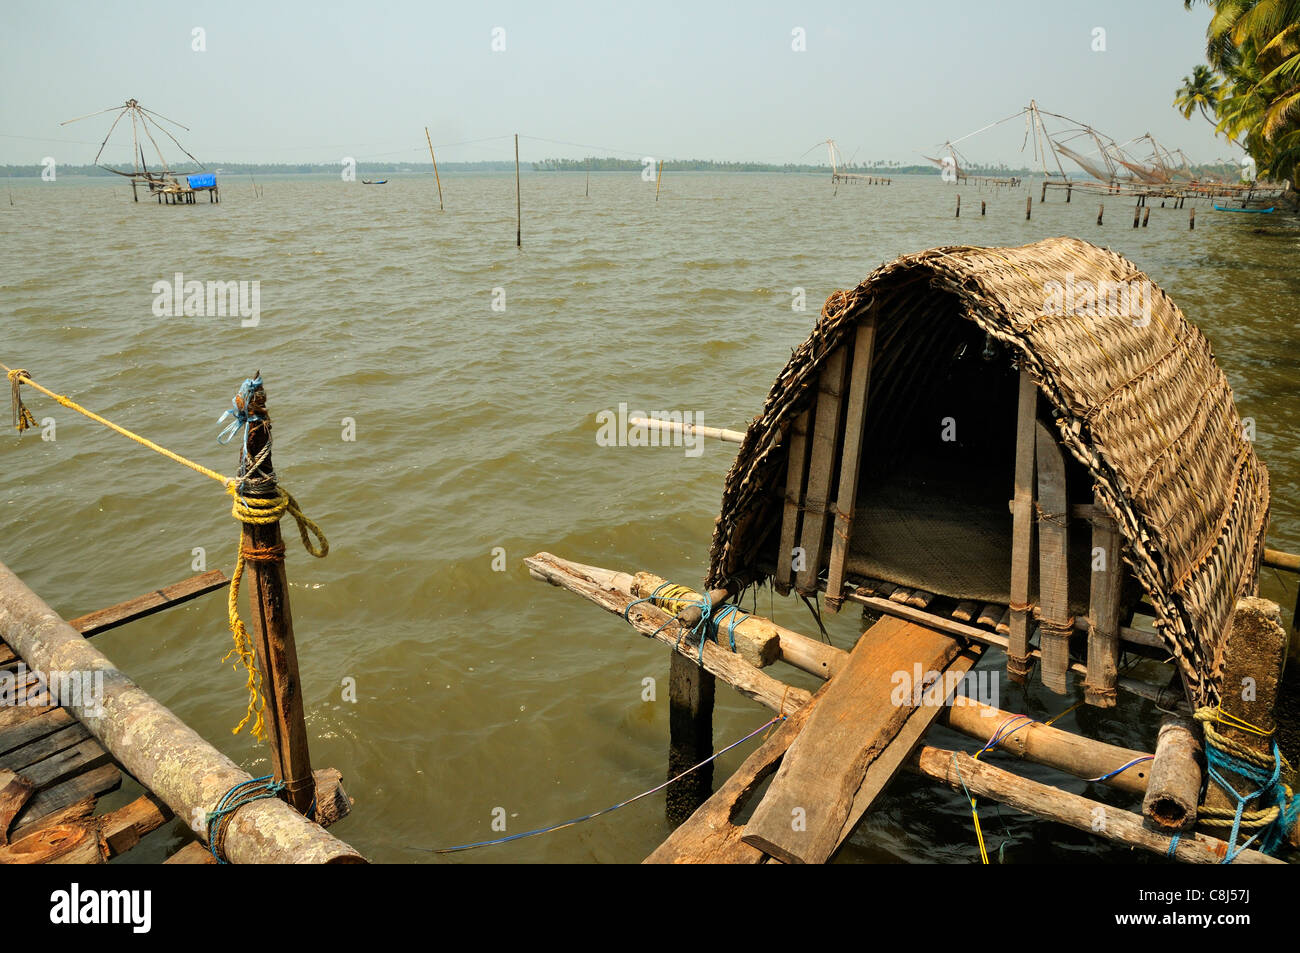 Filets de pêche chinois sur un lac marécageux près de fort Kochi ( Cochin ) montrant les filets et le refuge de base pour les pêcheurs, Kerala, Inde Banque D'Images